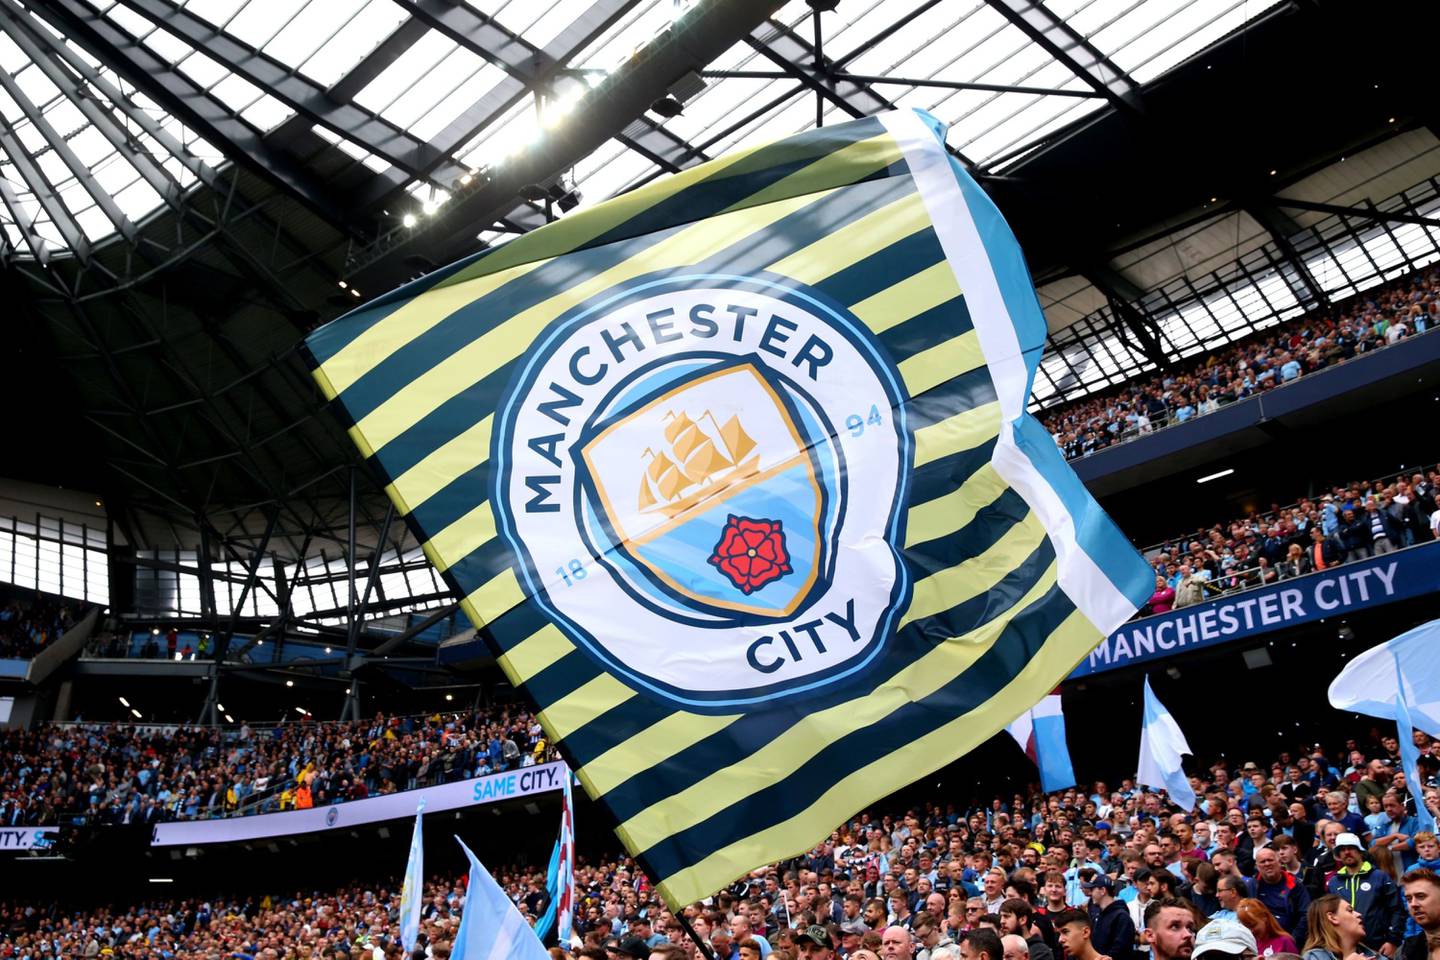 La bandera del Manchester City se ve durante el partido de la Premier League entre el Manchester City y el Huddersfield Town en el Etihad Stadium el 19 de agosto de 2018 en Mánchester, Reino Unido.